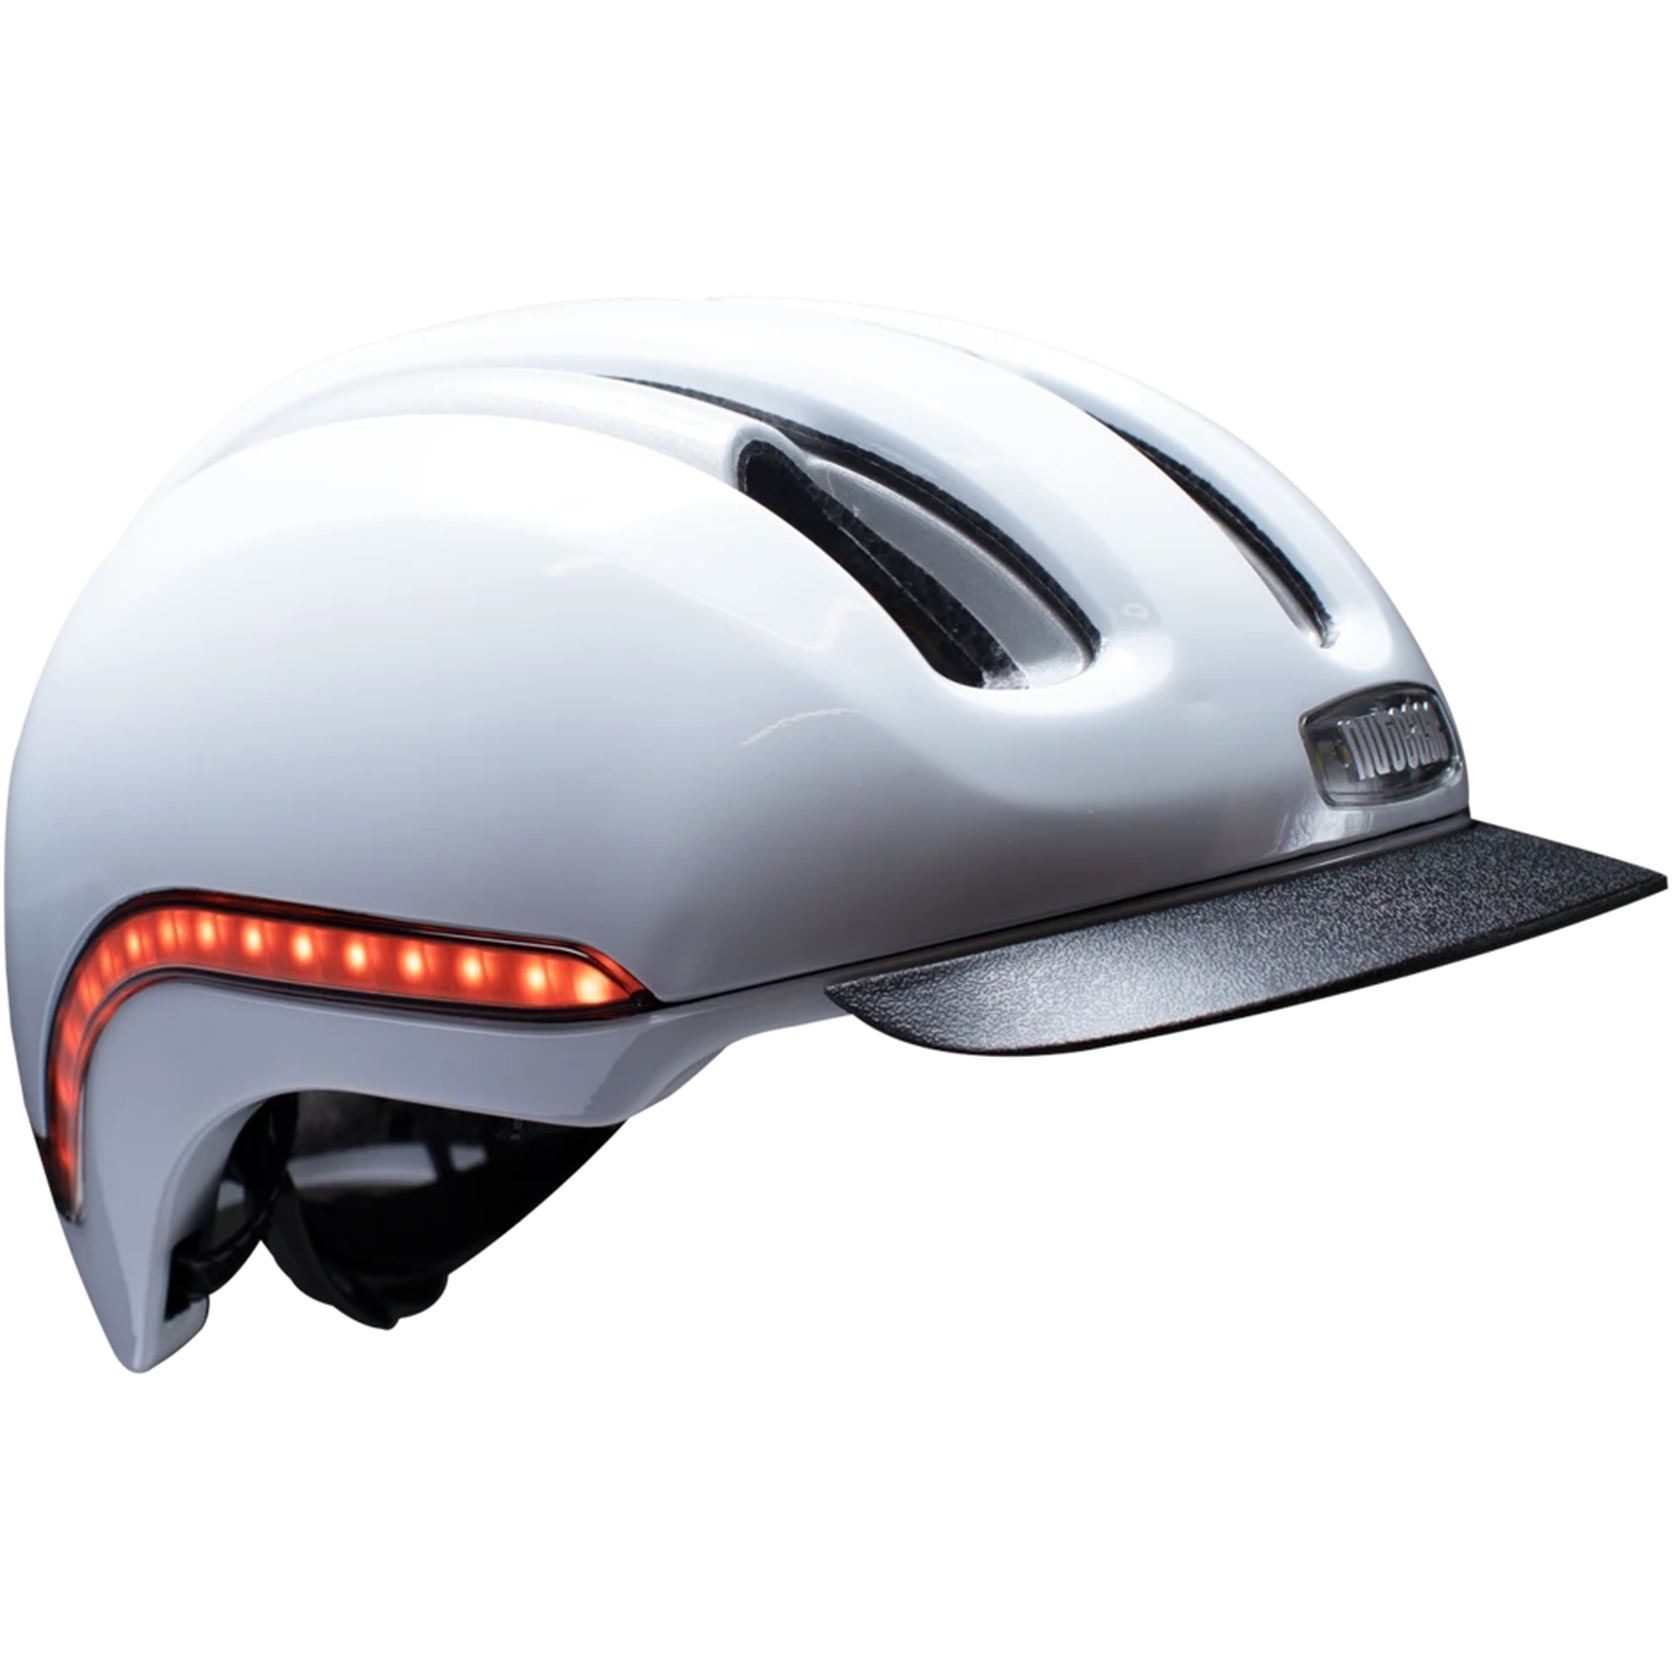 Productfoto van Nutcase Vio Commute MIPS LED Helmet - Blanco Gloss